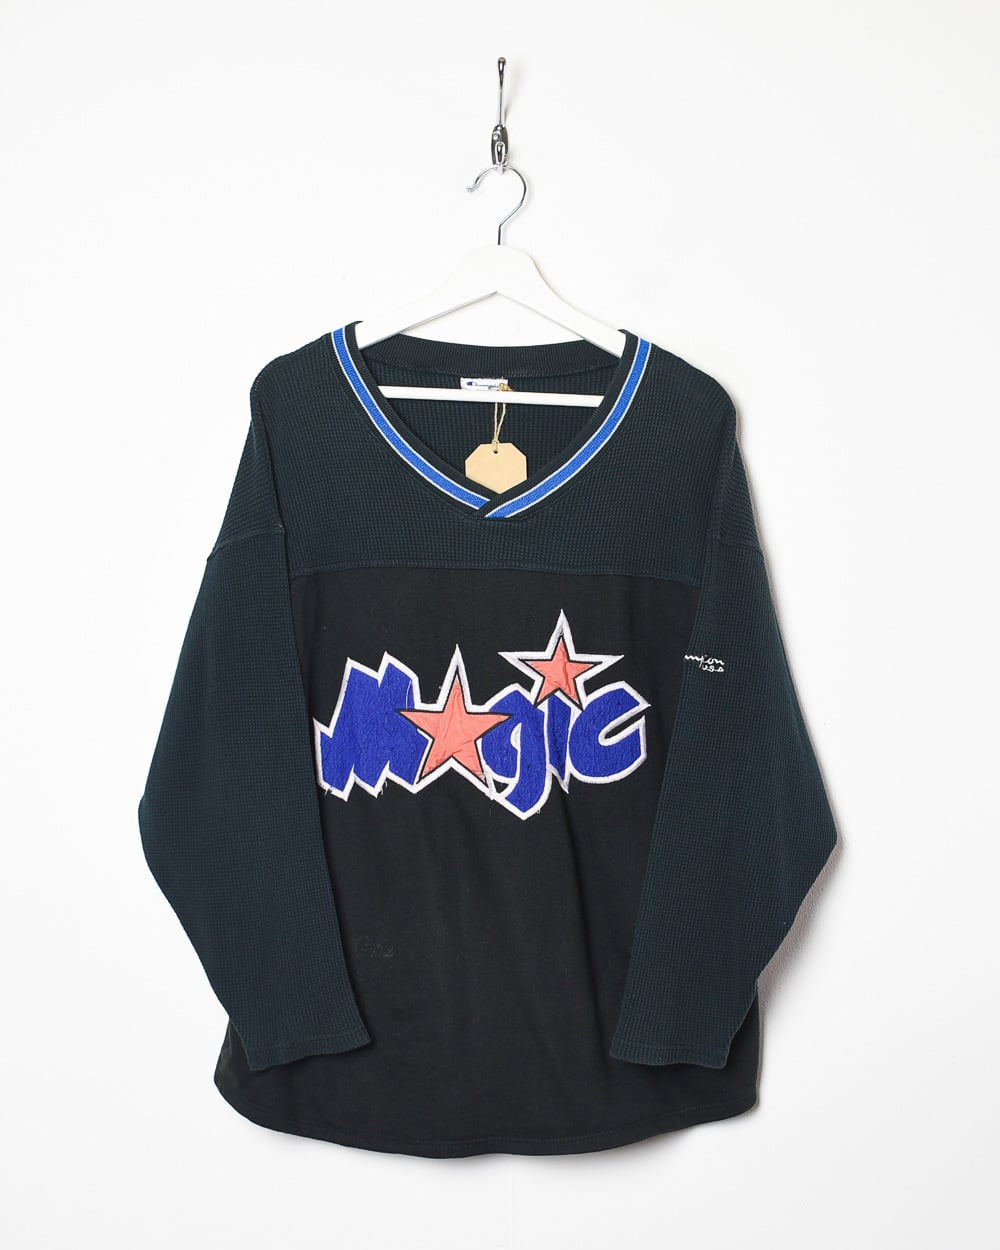 Black Champion X NBA Orlando Magic Sweatshirt - Medium